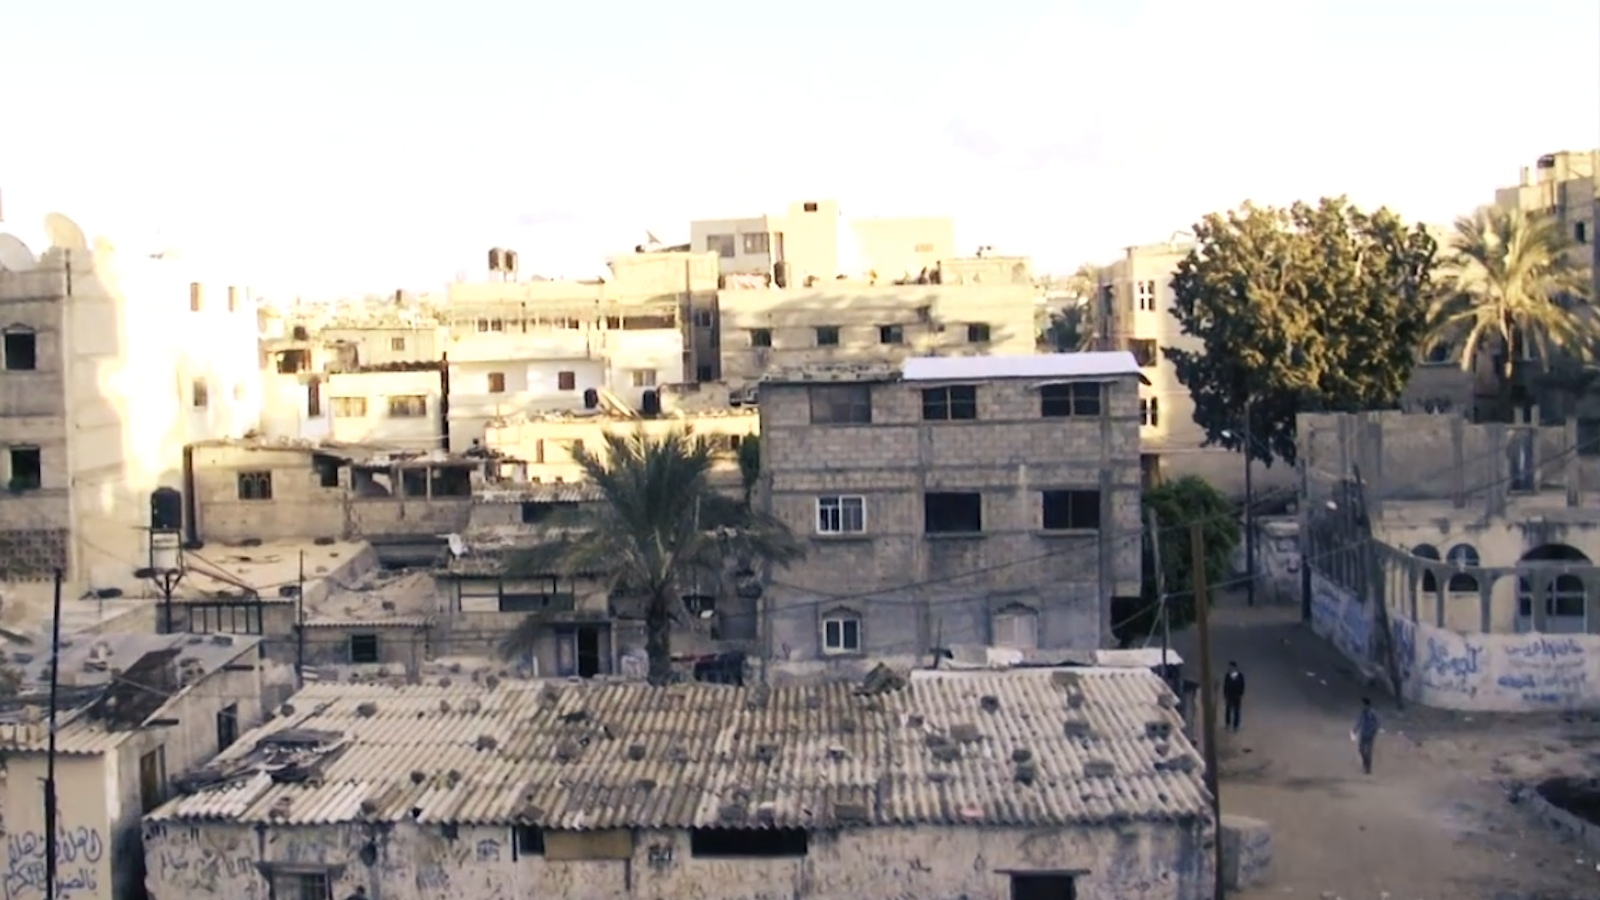 Actualité : stratégies géopolitiques, coexistence confessionnelle pacifique… Sur Prime Video, plusieurs documentaires pour éclairer la portée de la guerre Israël-Hamas